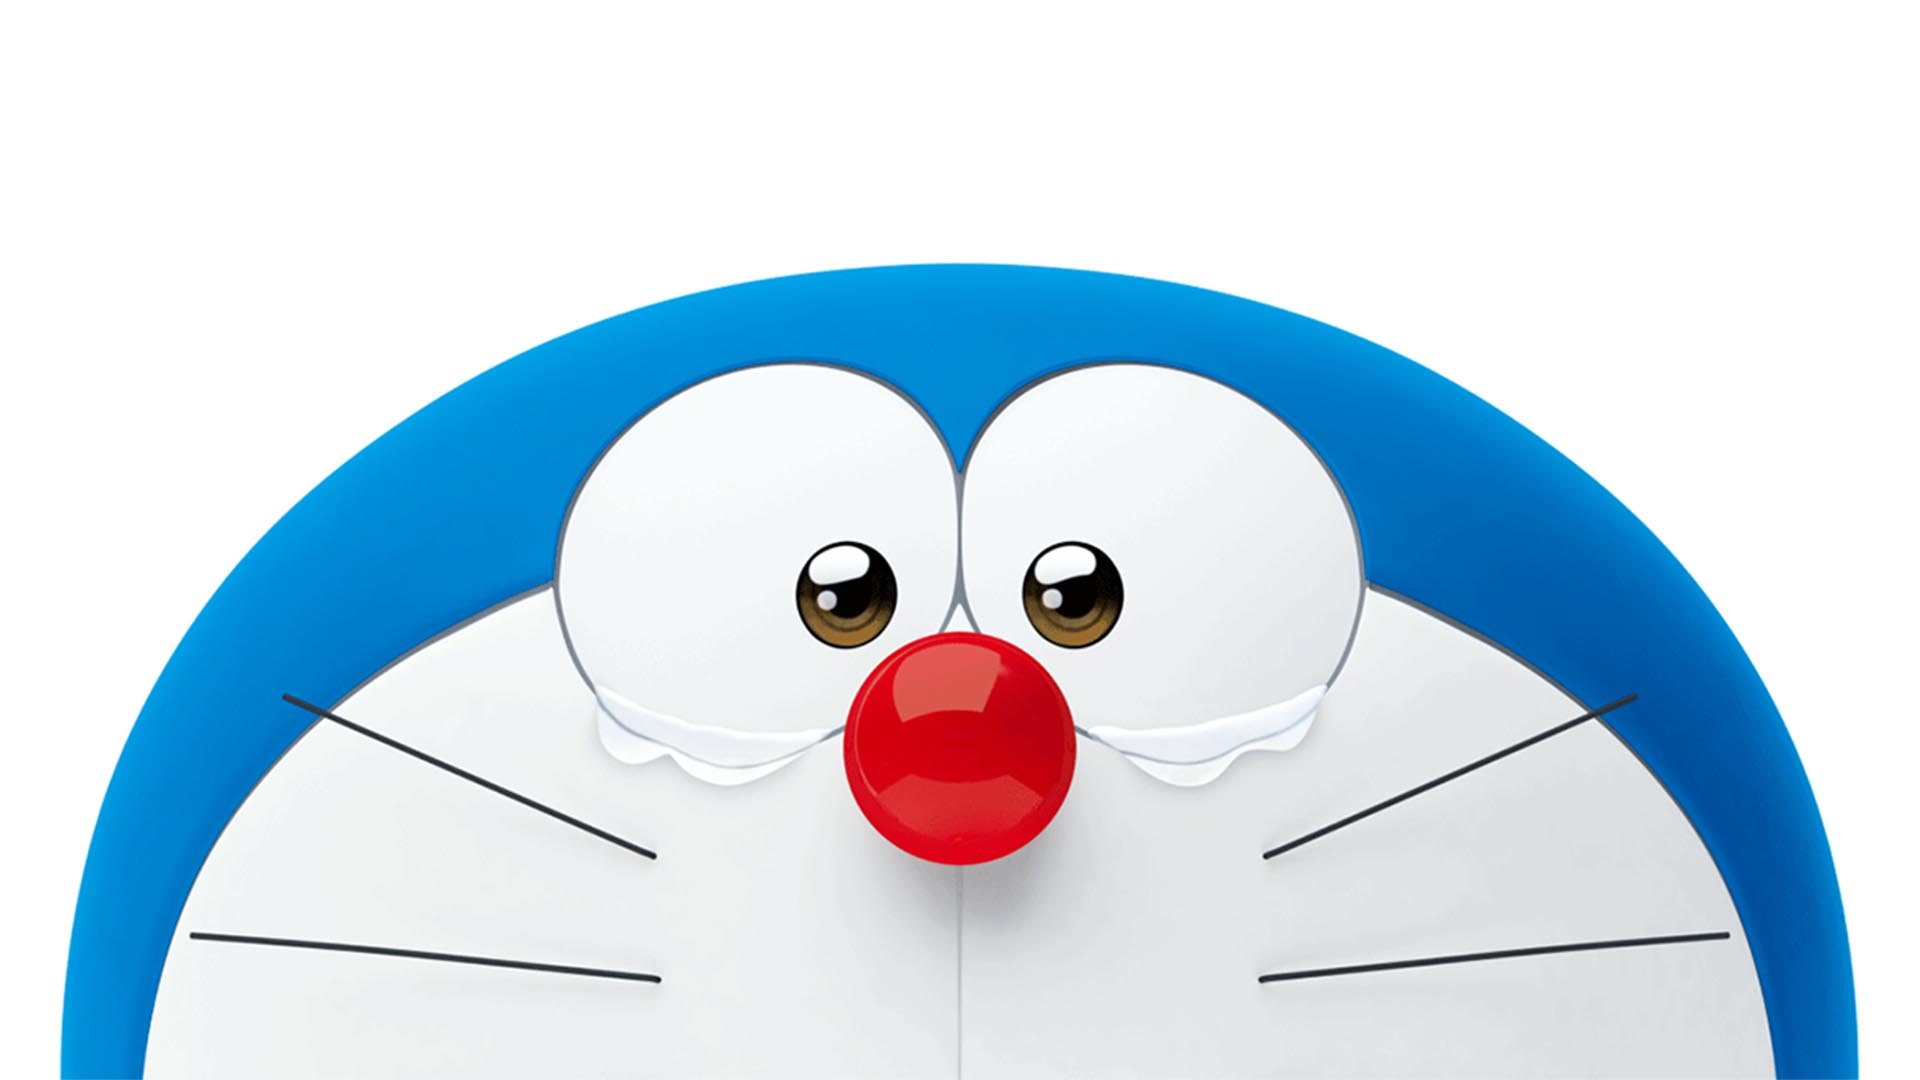 Các fan của Doraemon đã sẵn sàng cho những hình nền máy tính mới nhất chưa? Đây là một cách tuyệt vời để tôn lên sự yêu thích Doraemon của bạn và tạo nên không gian làm việc vui tươi, đầy phấn khởi. Trải nghiệm những hình nền độc đáo với nhiều trang trí tuyệt vời và những hình ảnh Doraemon đáng yêu.